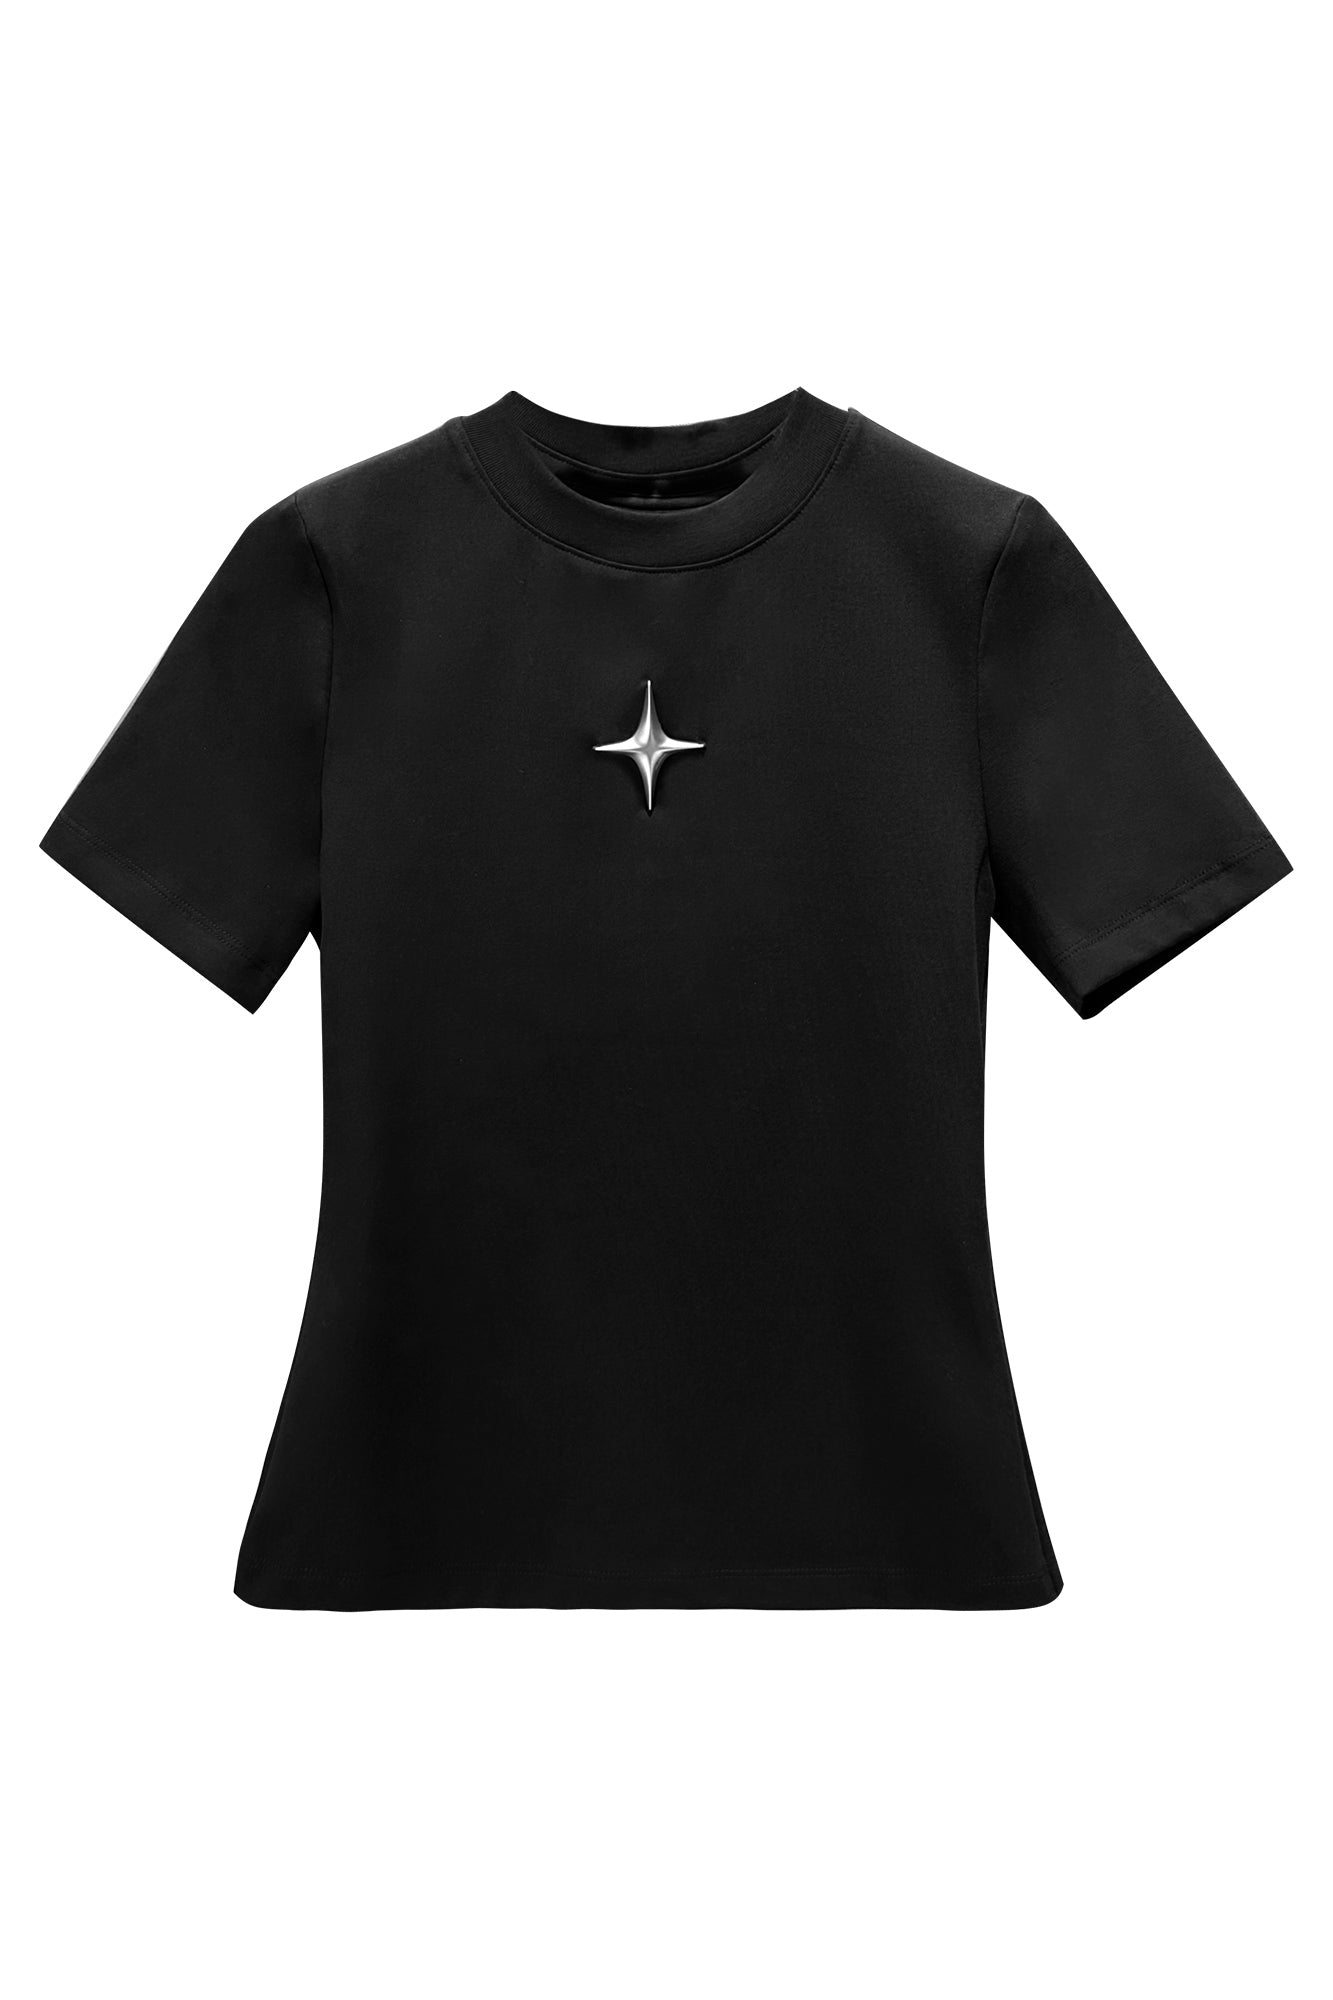 超大特価 ANNAKIKI T-shirt Tシャツ メンズ